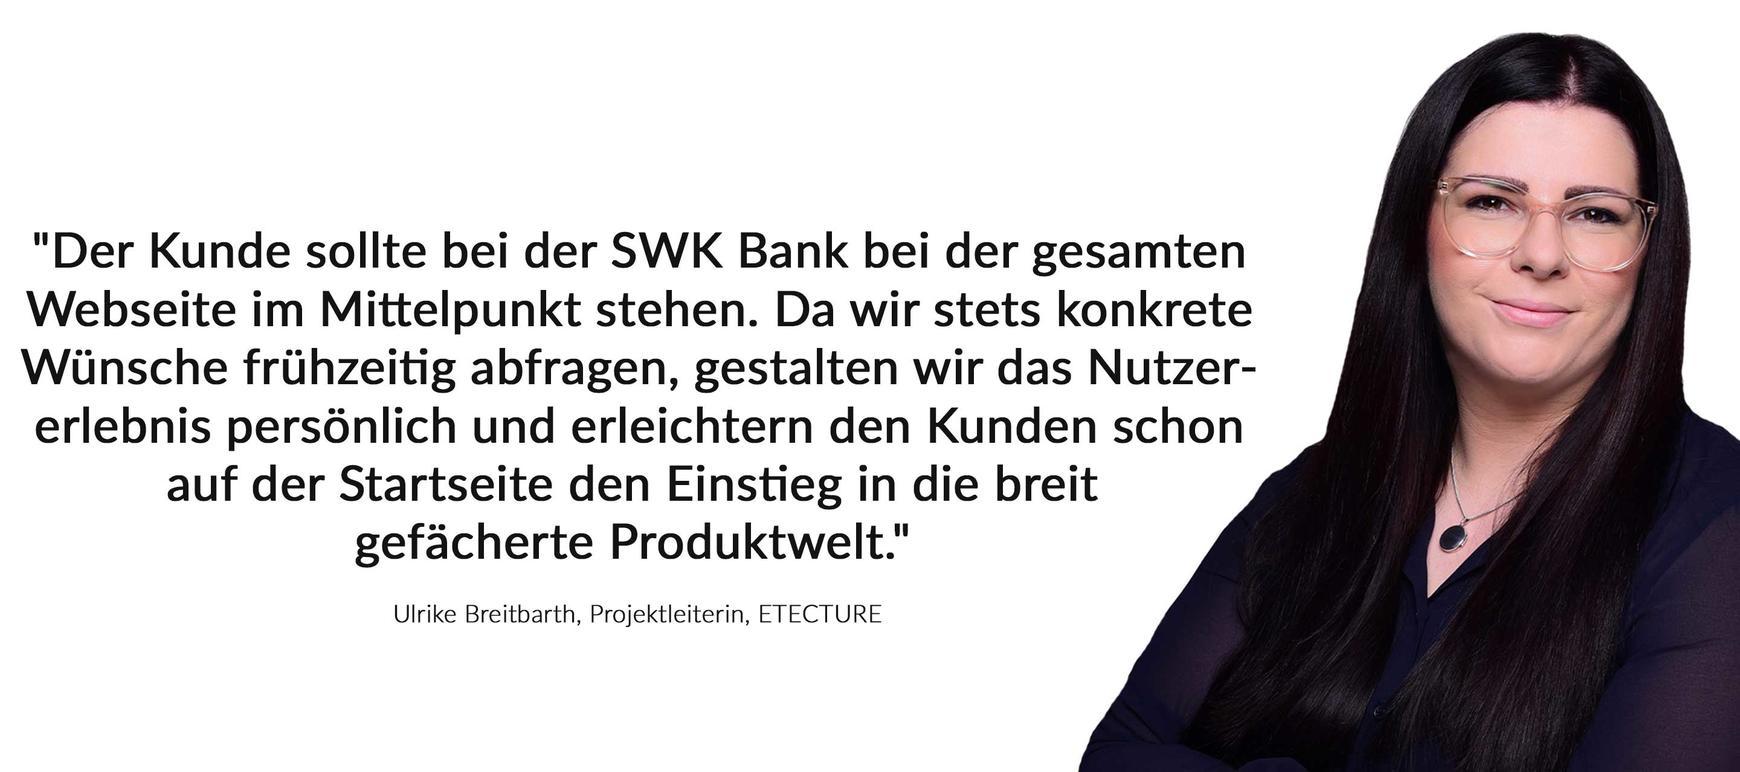 Swk Bank Flexibler Digitaler Vorreiter Etecture